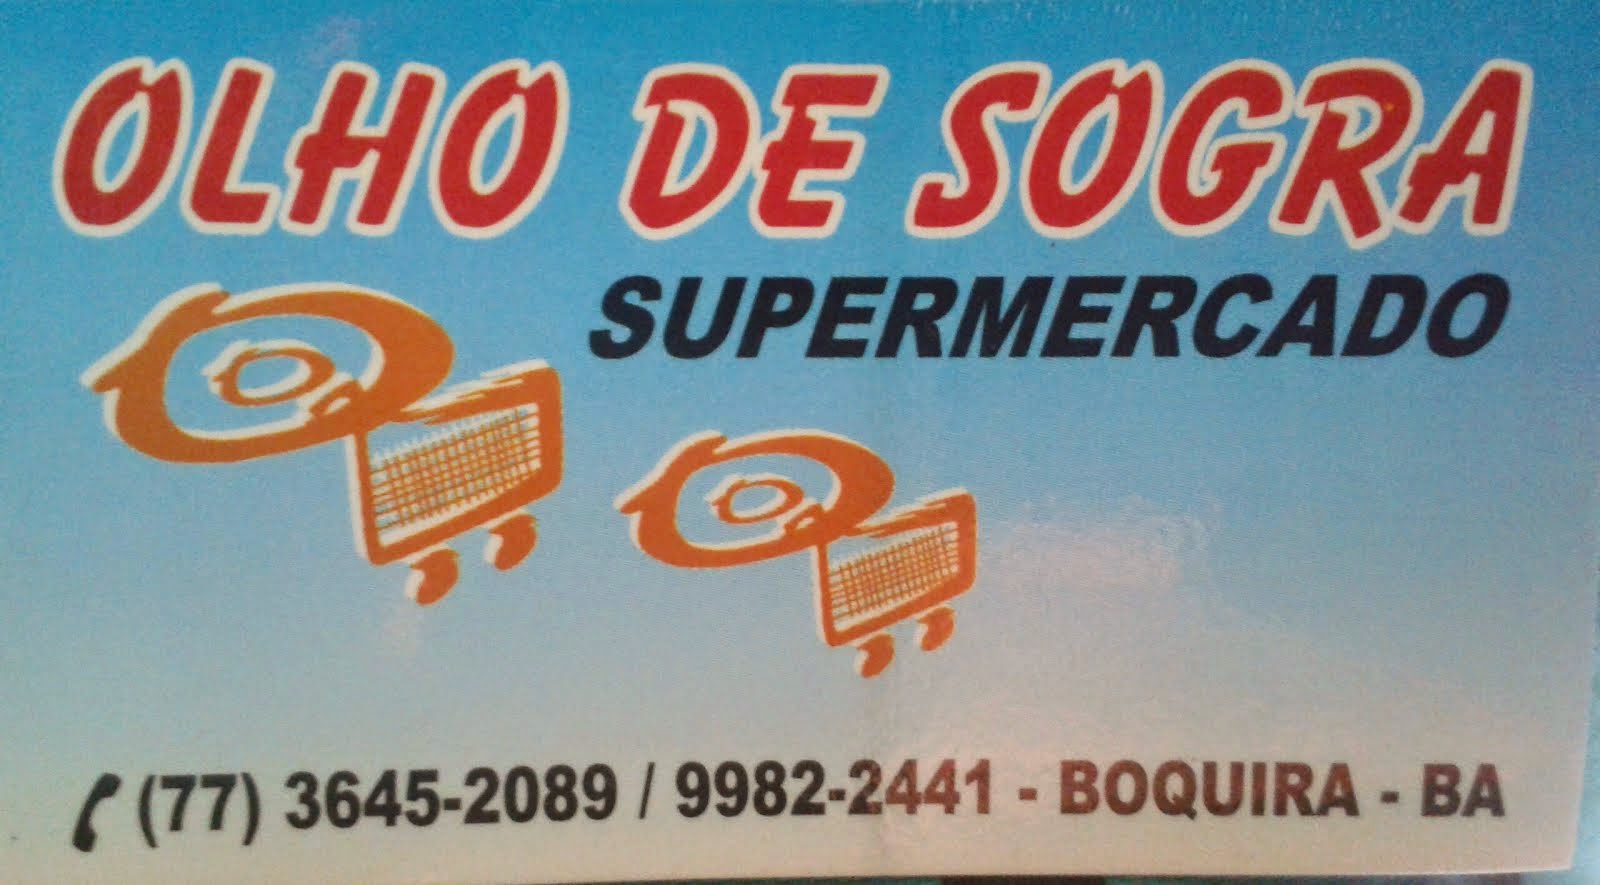 Supermercado Olho de Sogra